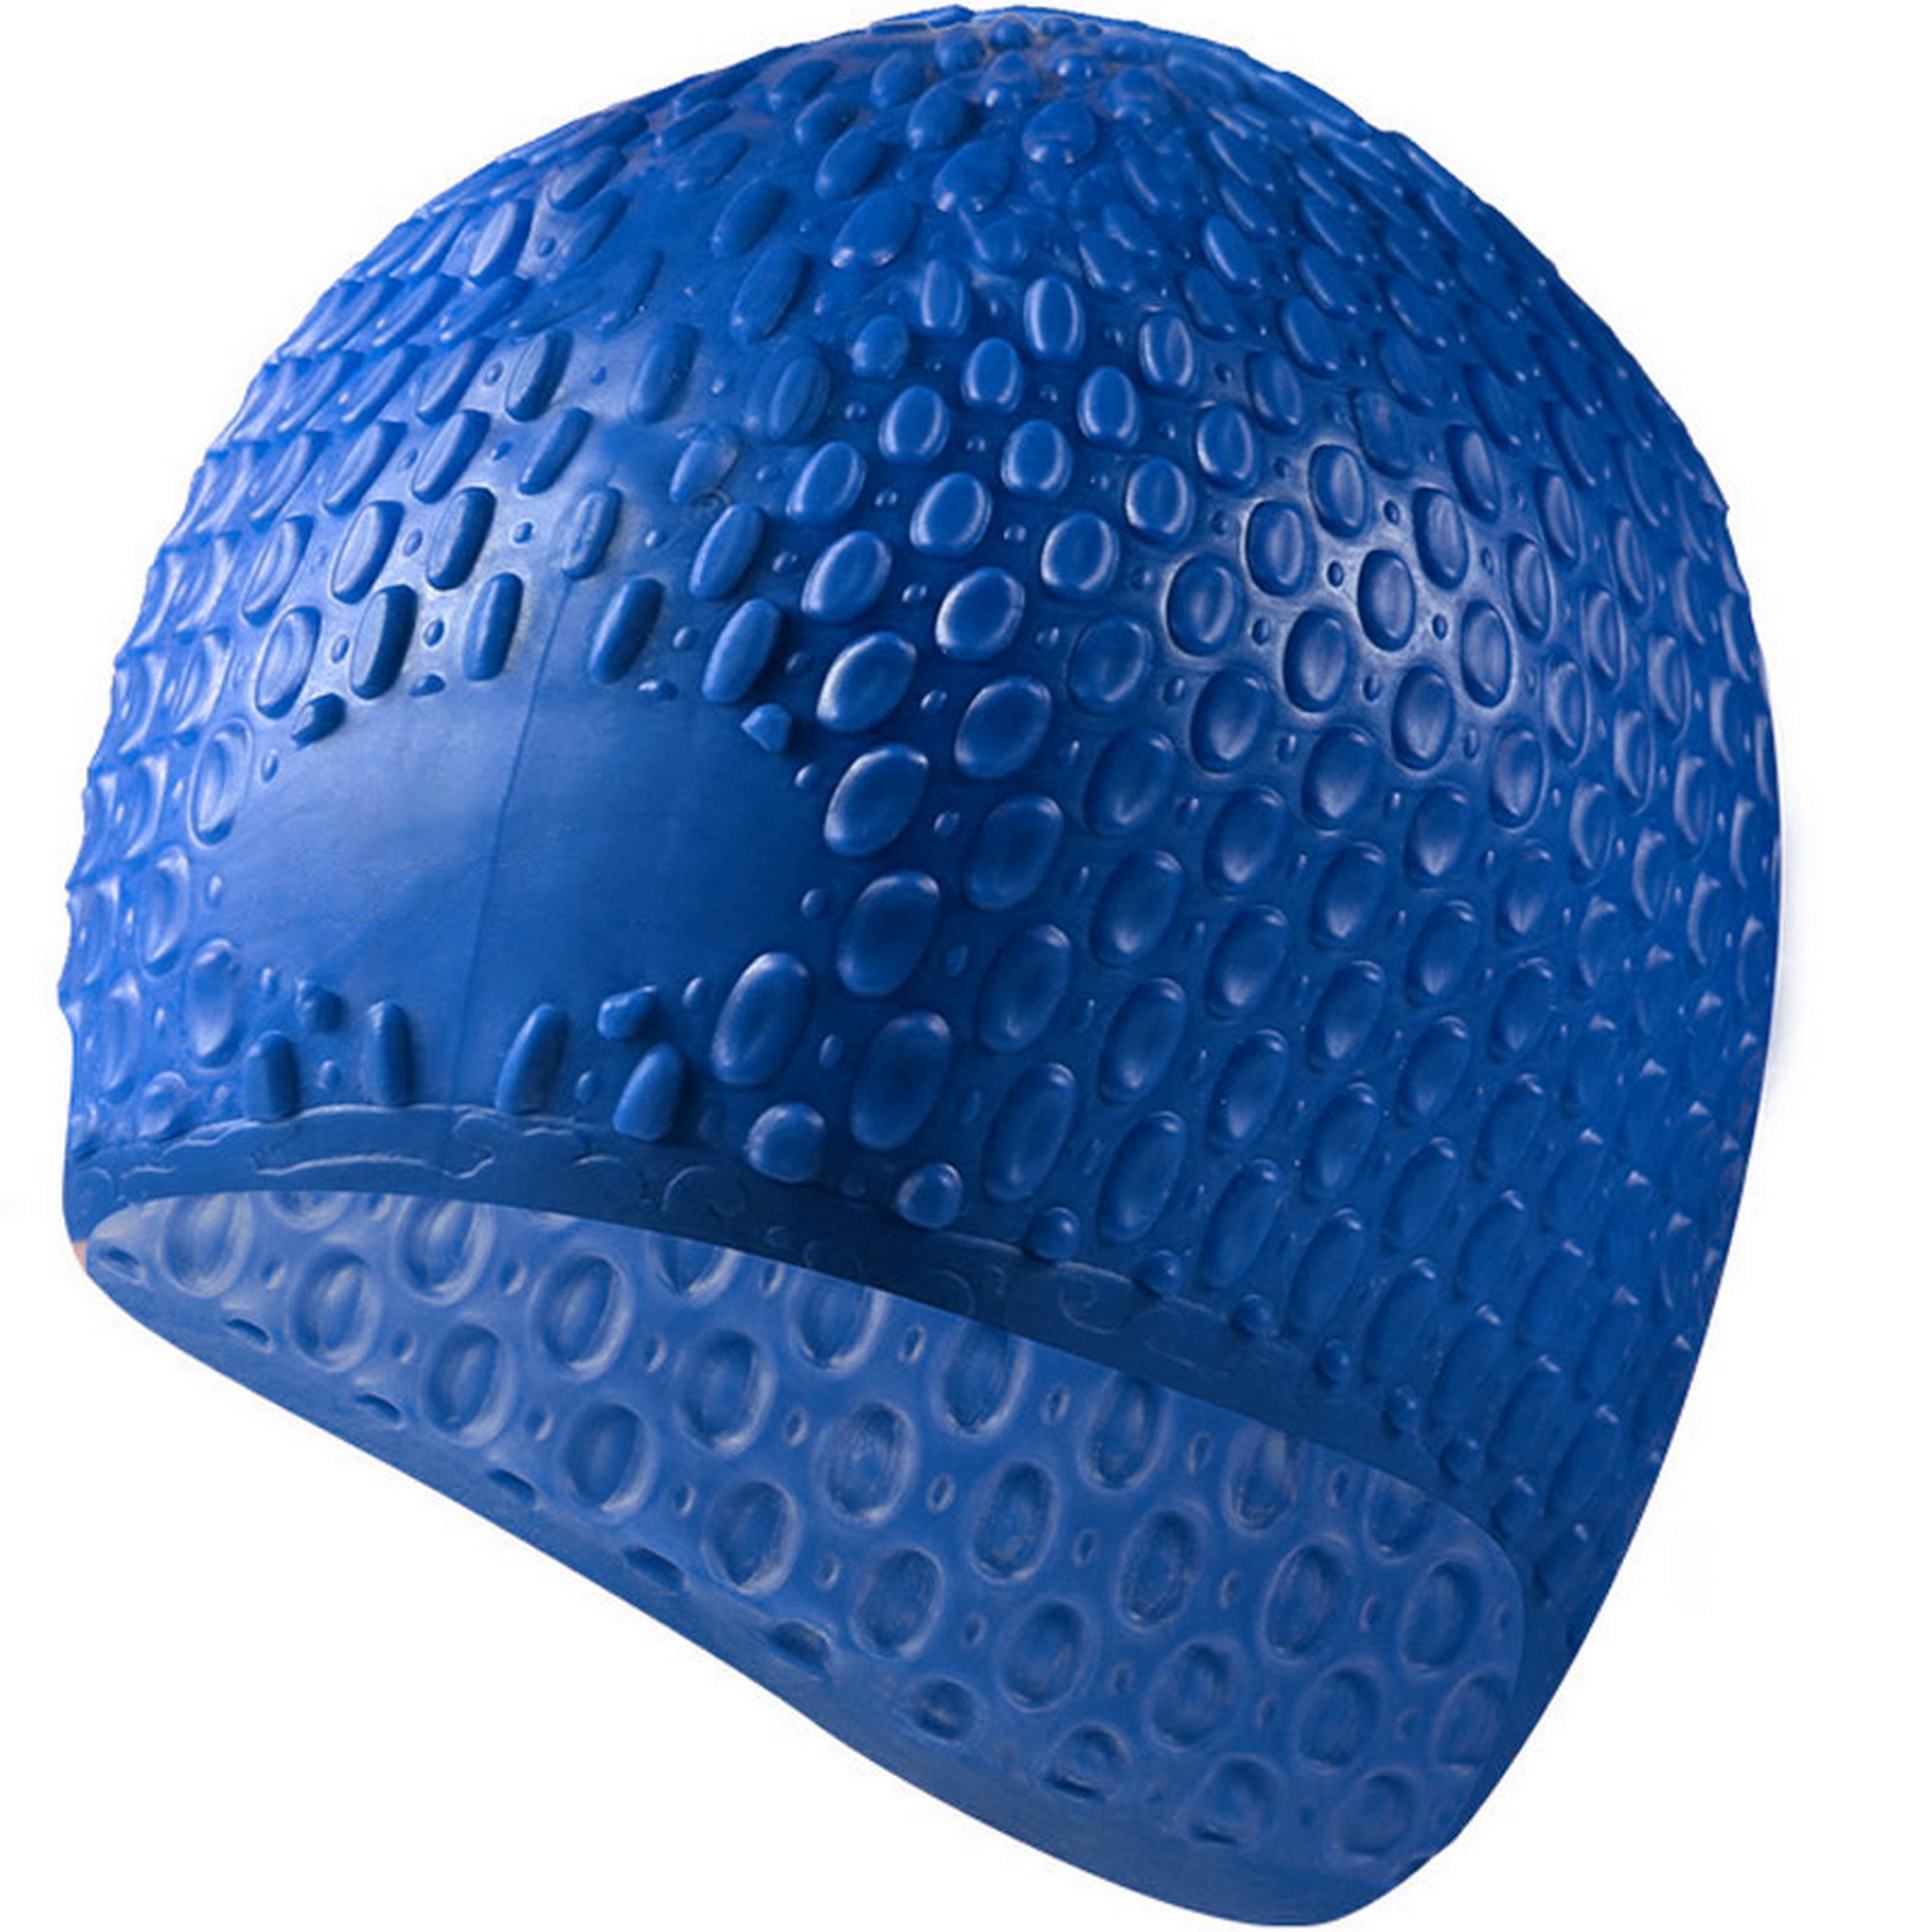 Шапочка для плавания Sportex силиконовая Bubble Cap B31519-1 синий,  - купить со скидкой